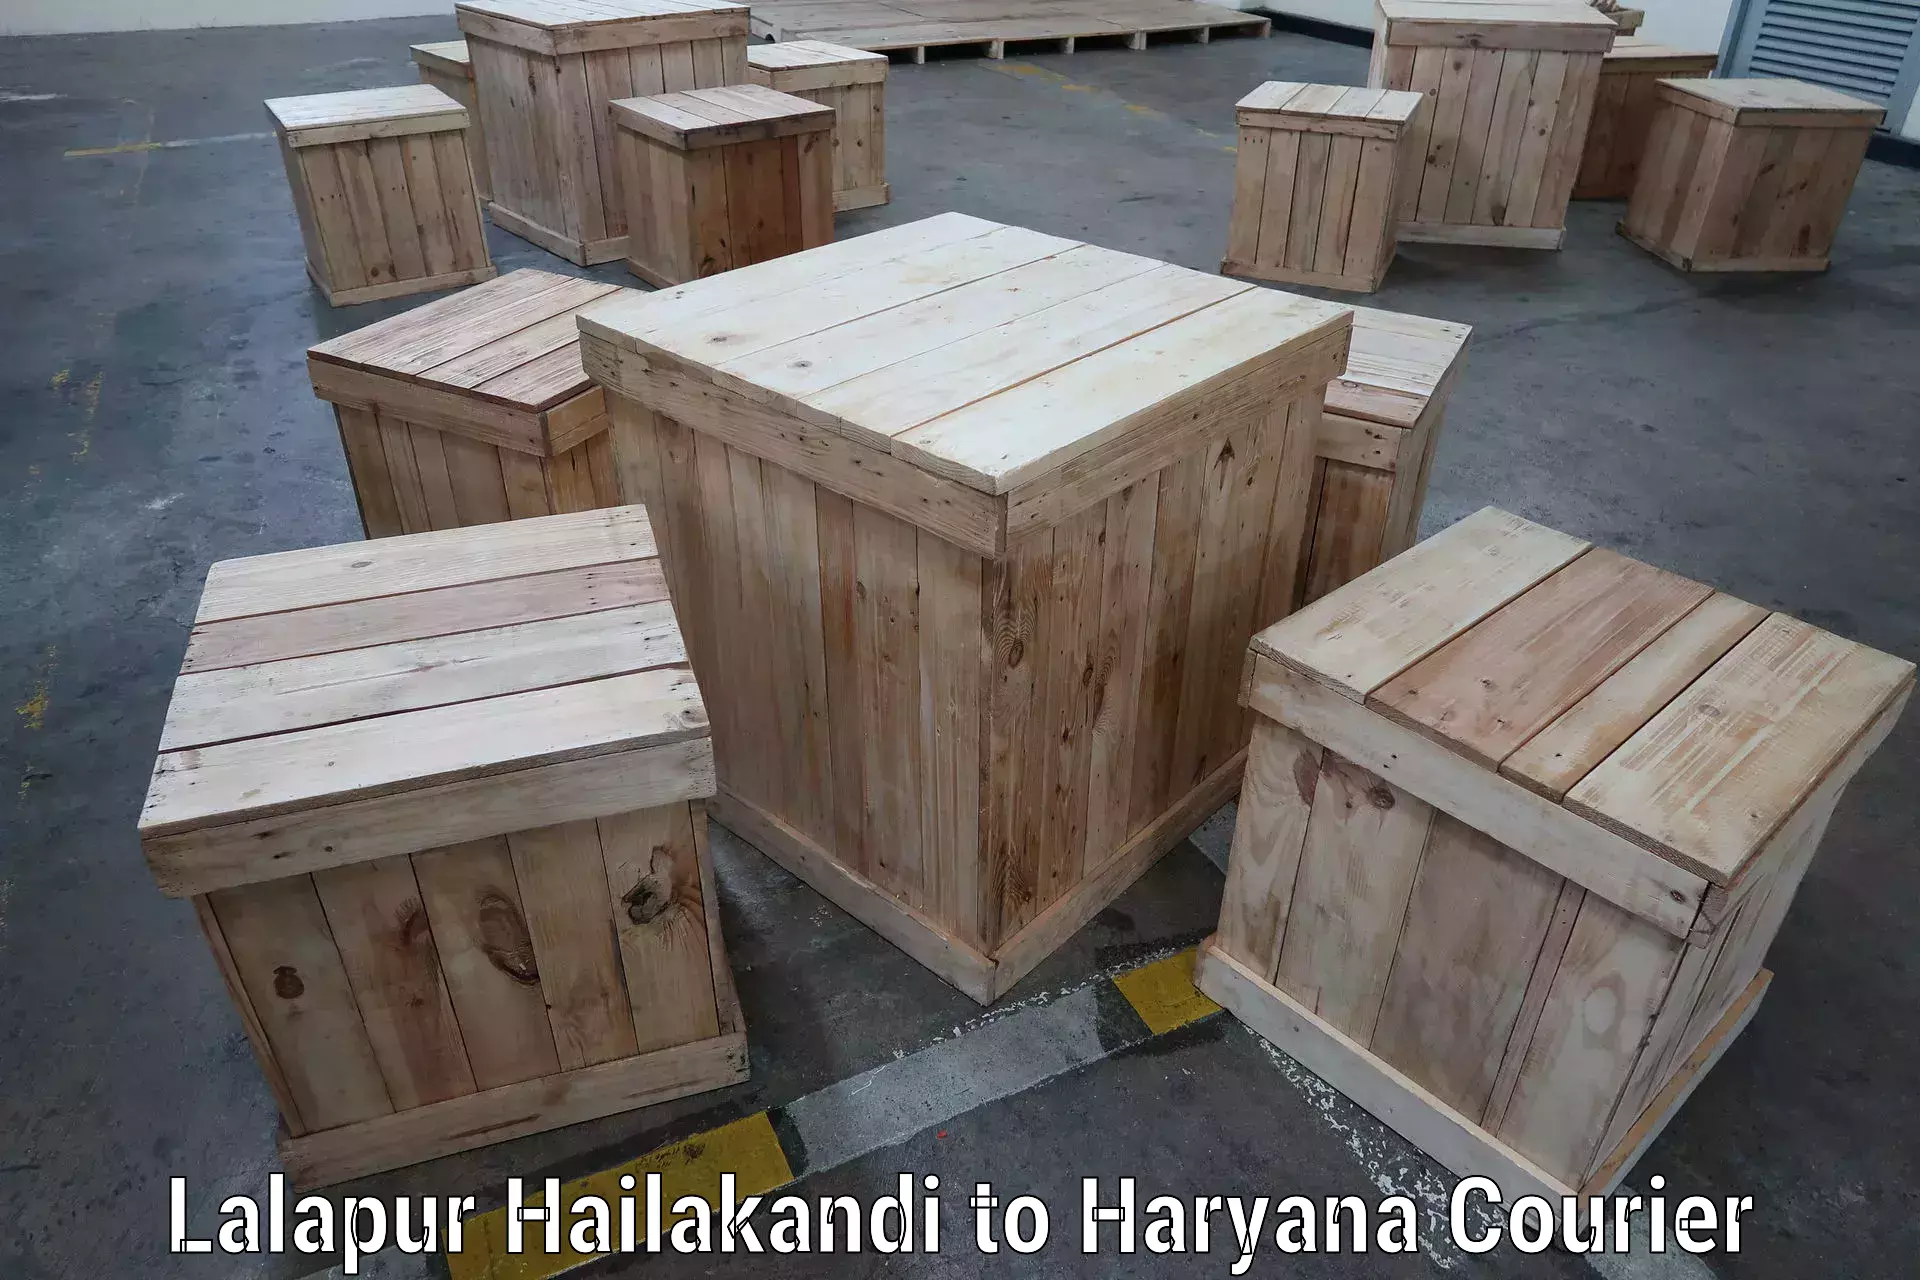 Cargo delivery service Lalapur Hailakandi to Haryana